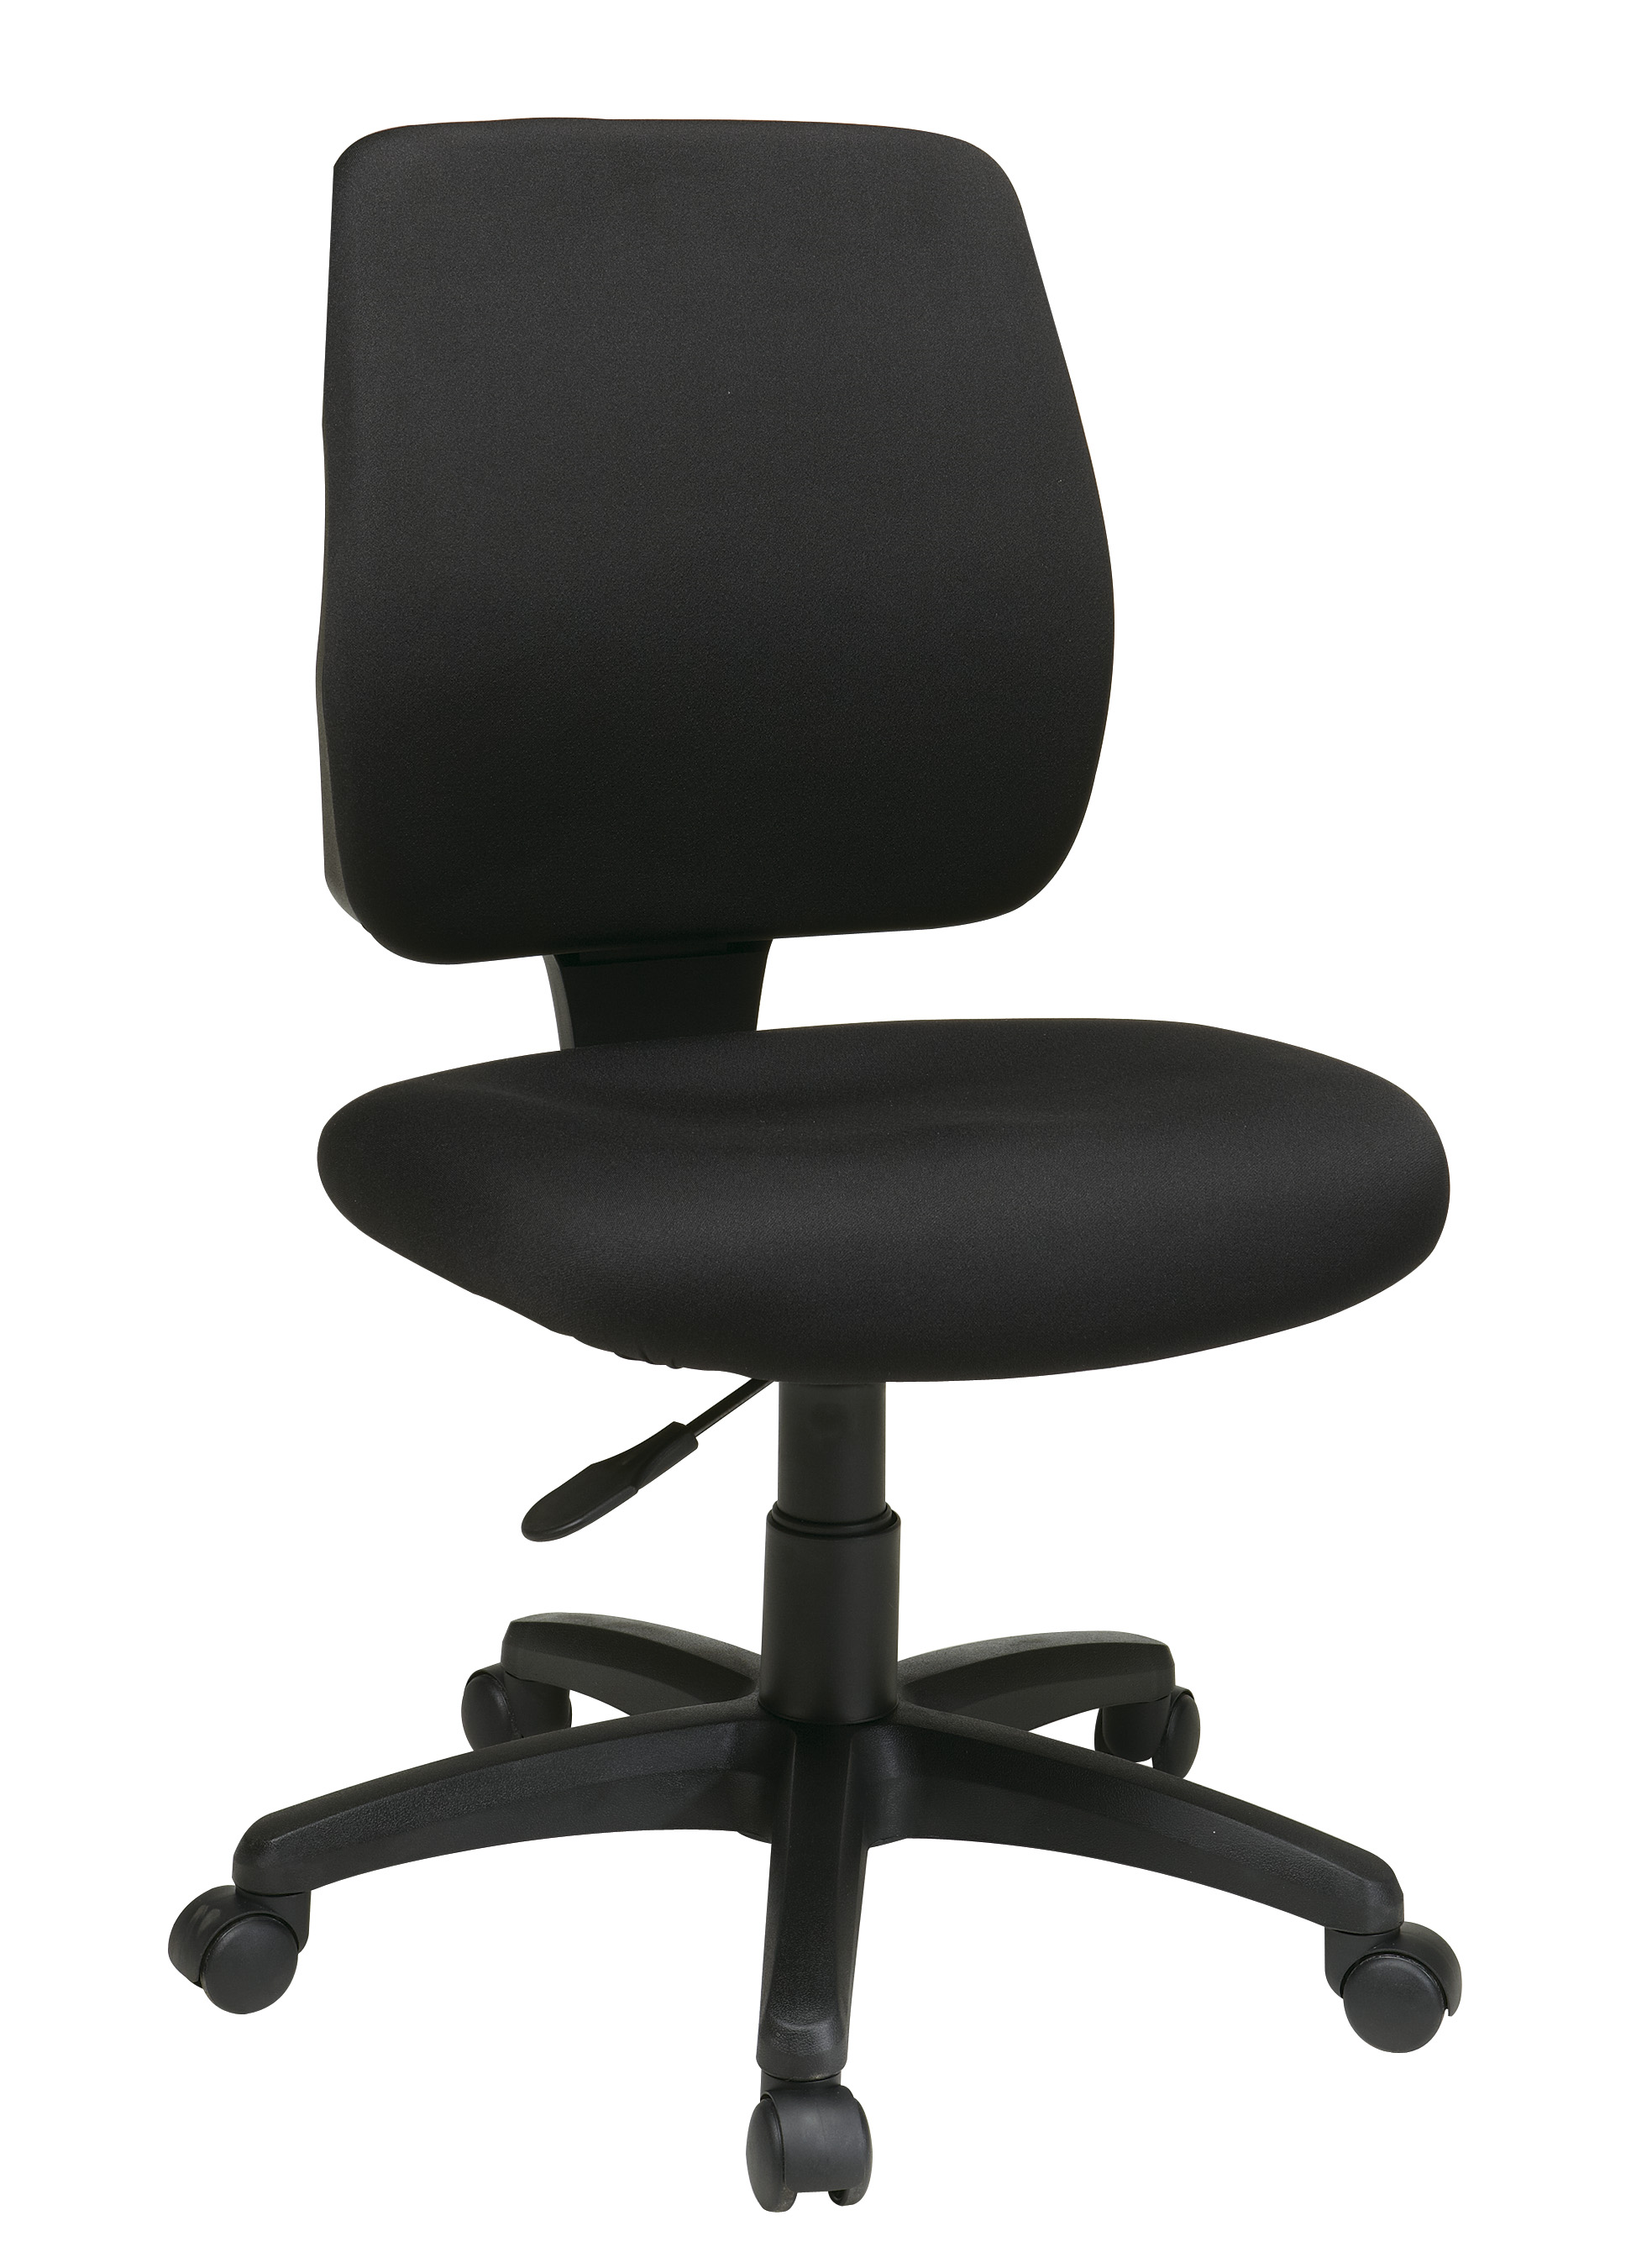 Ebern designs malbon task chair